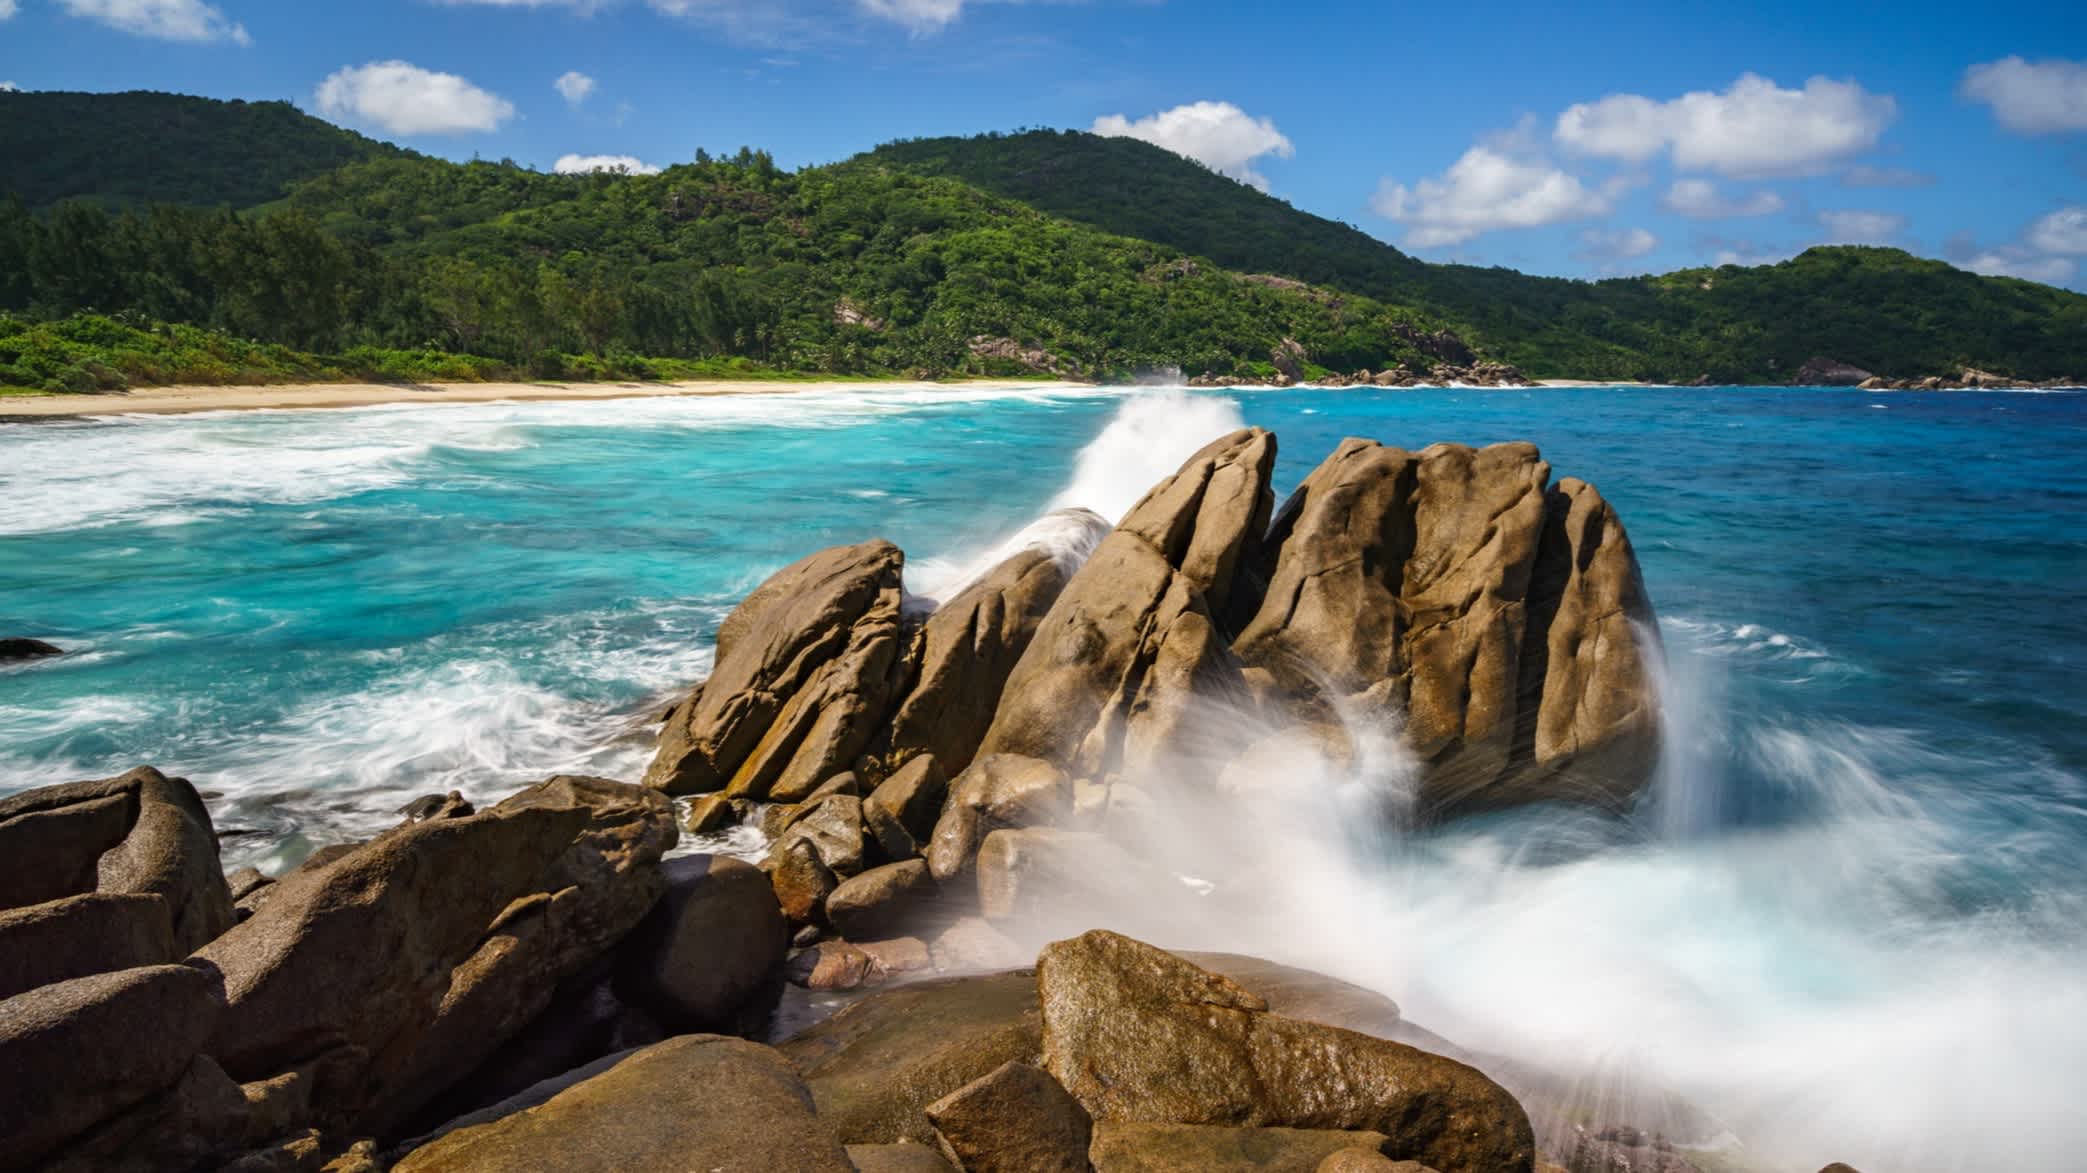 Große Granitfelsen, Palmen, türkisfarbenes Wasser des Indischen Ozeans, weißer Sand am tropischen Strand Wild Paradise, Police Bay, Seychellen, Mahé